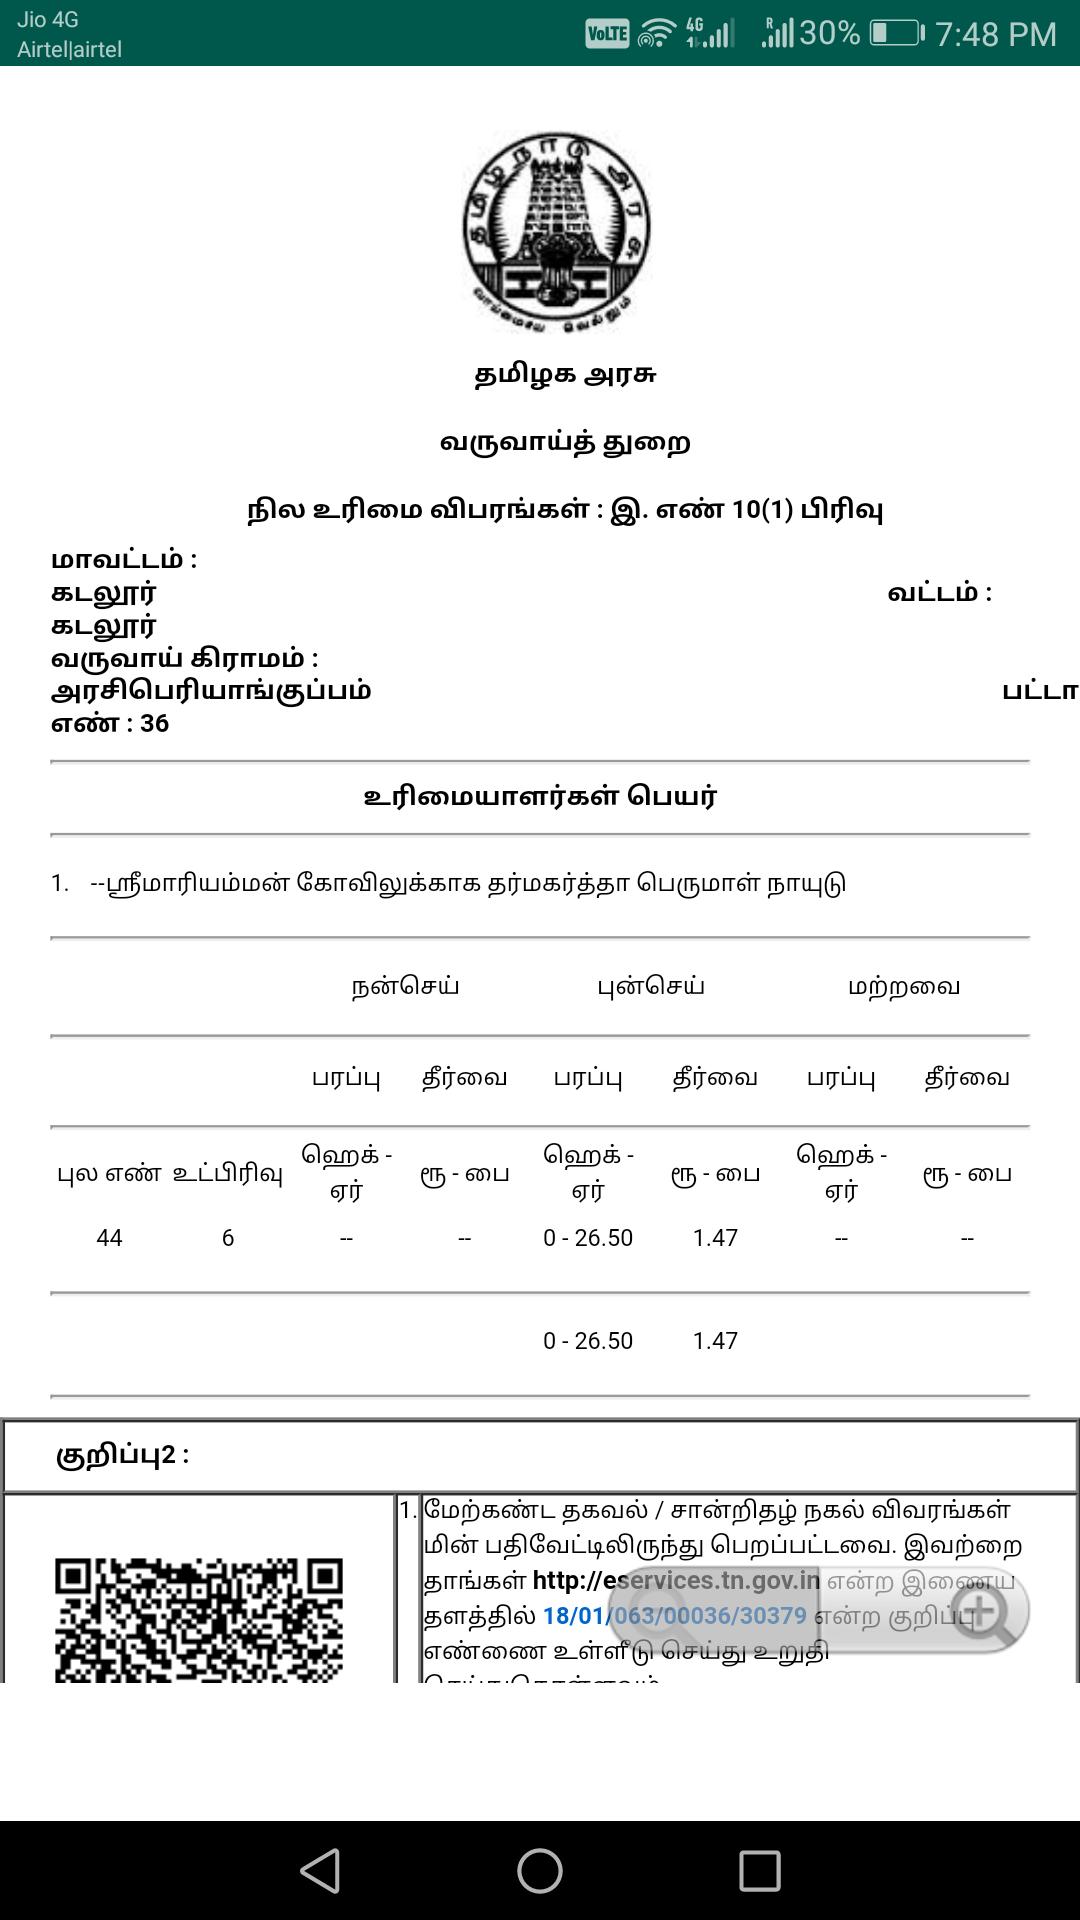 Tamilnadu patta download